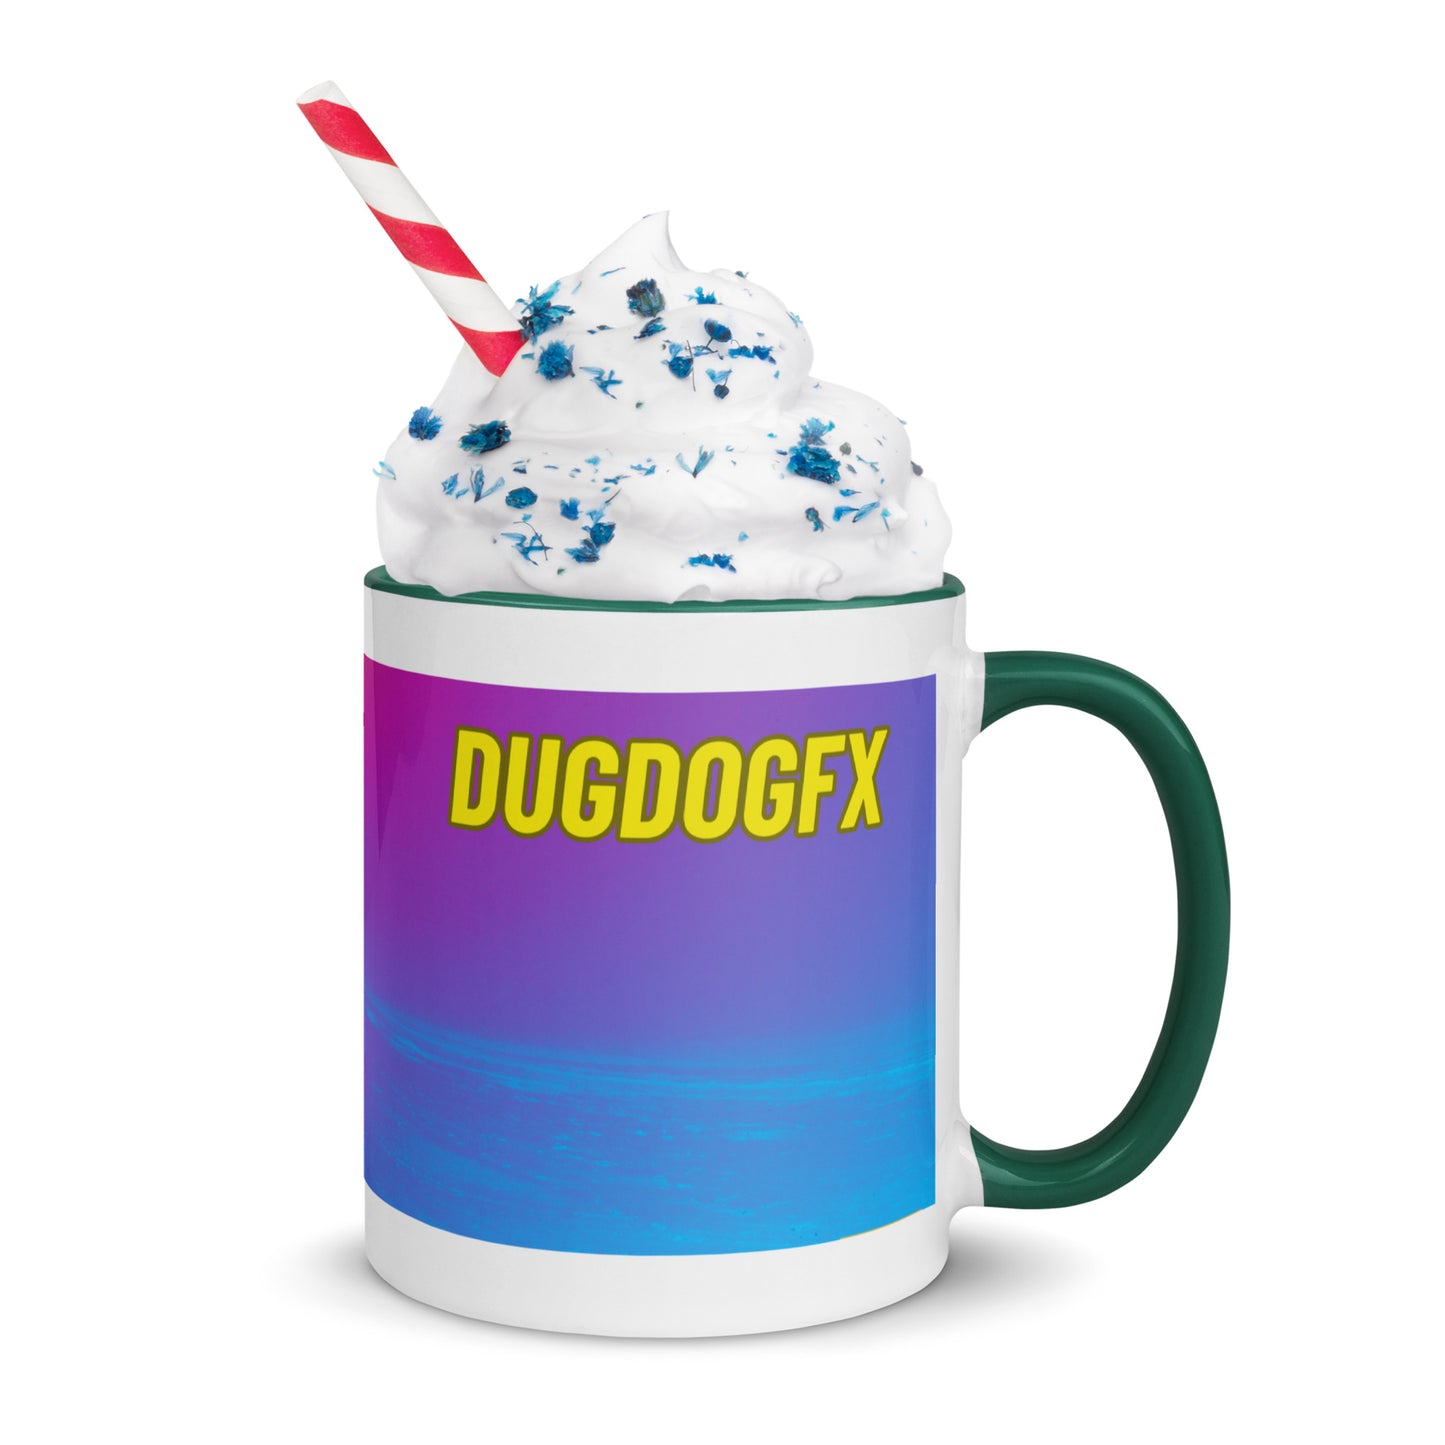 DugDogFX Silhouette Mug With Color Inside